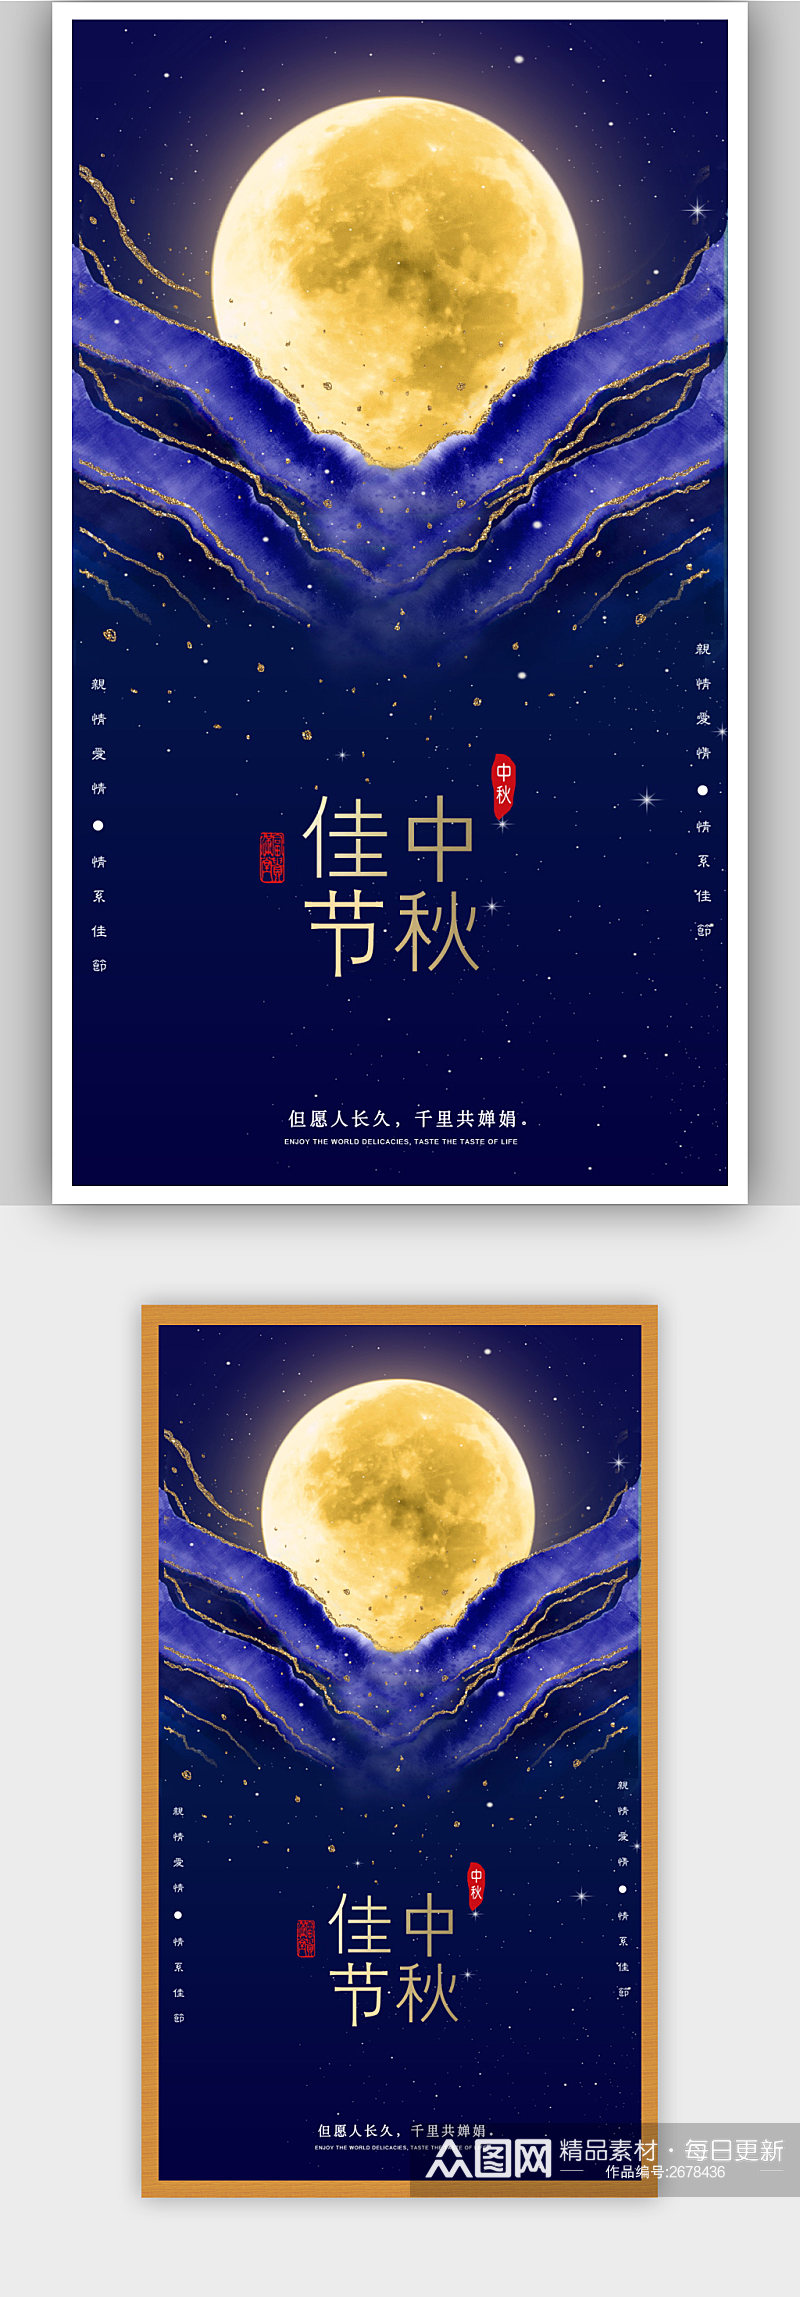 传统中秋佳节宣传海报素材